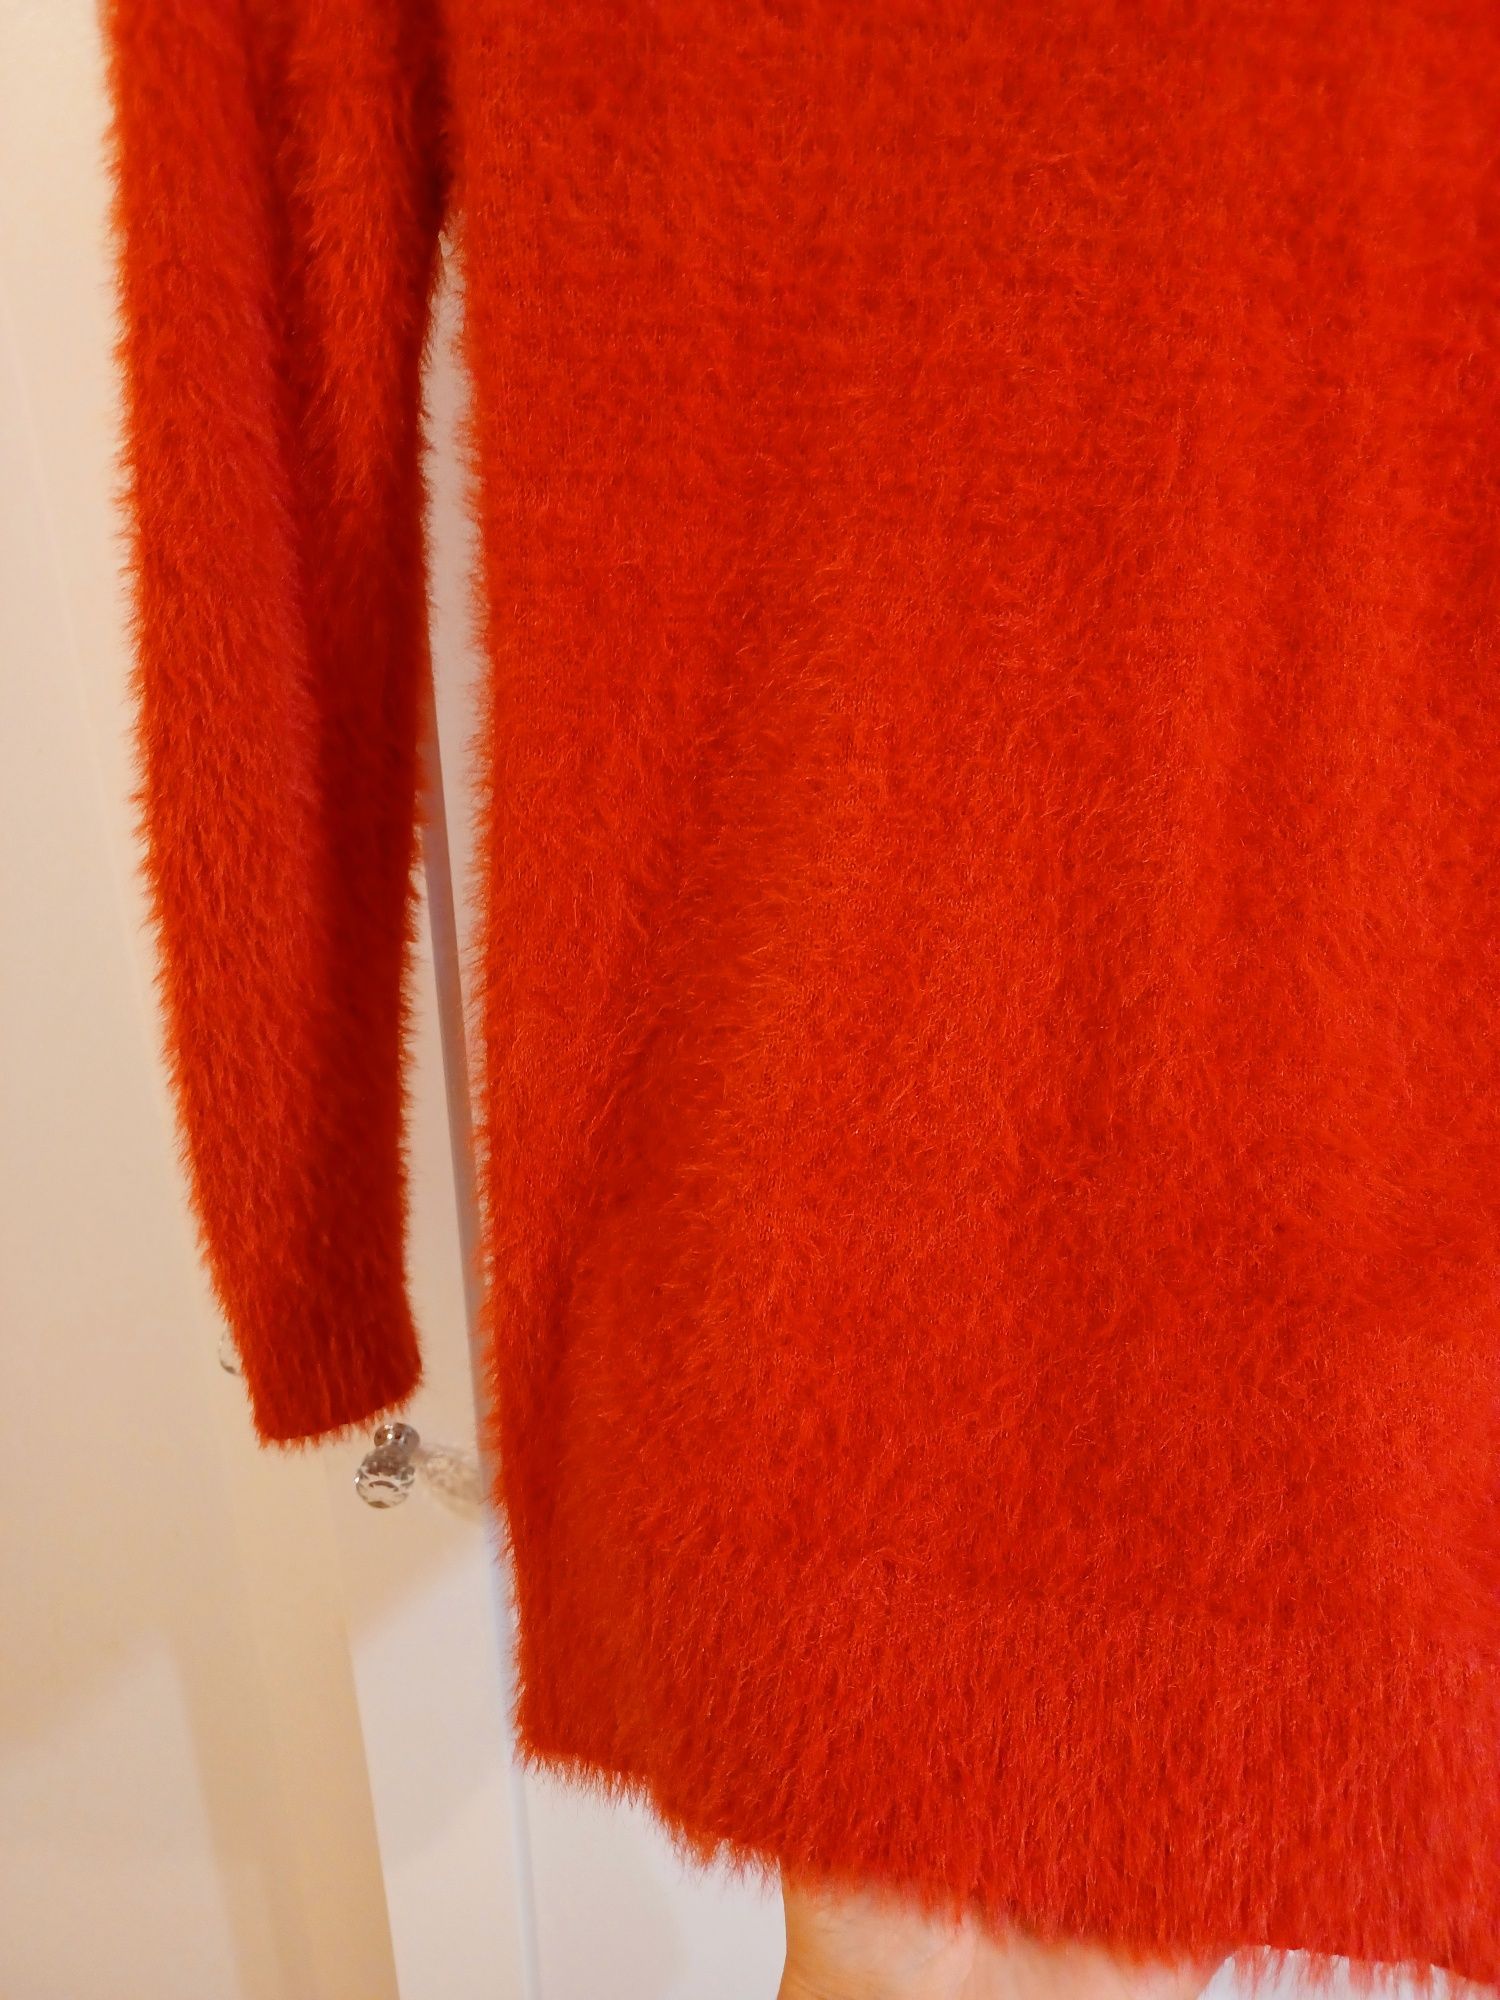 Swetr swetrek futrzak L czerwony damski